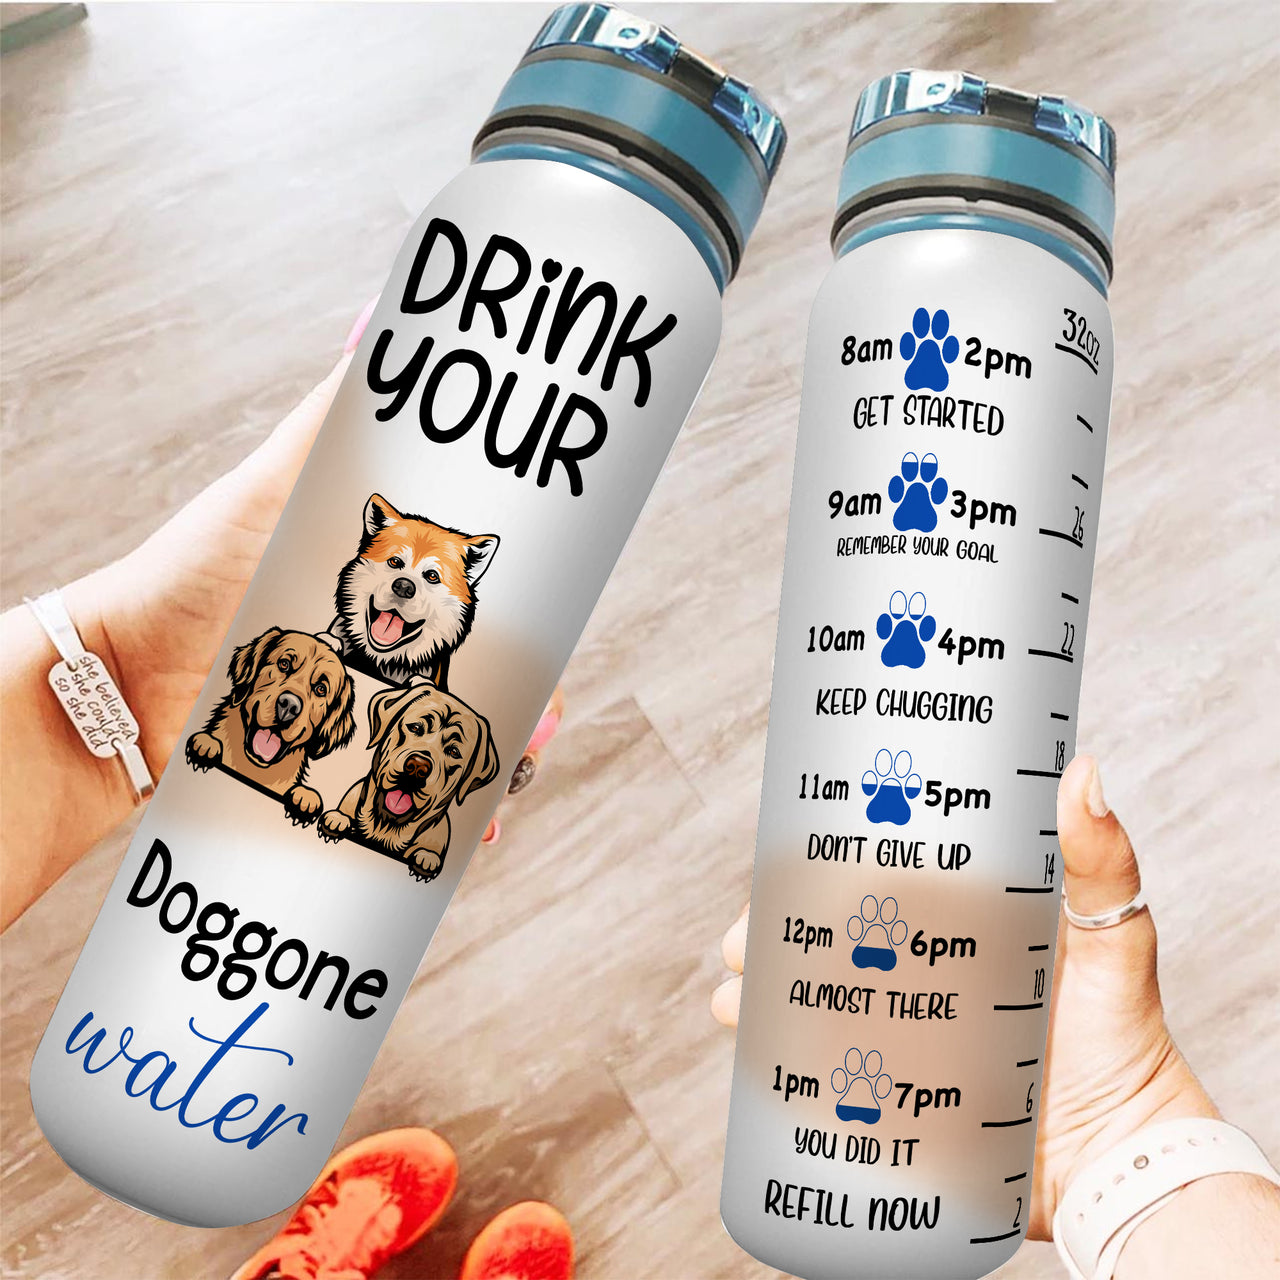 DRINK YOUR DOGGONE WATER - Custom Water Tracker Bottle AA